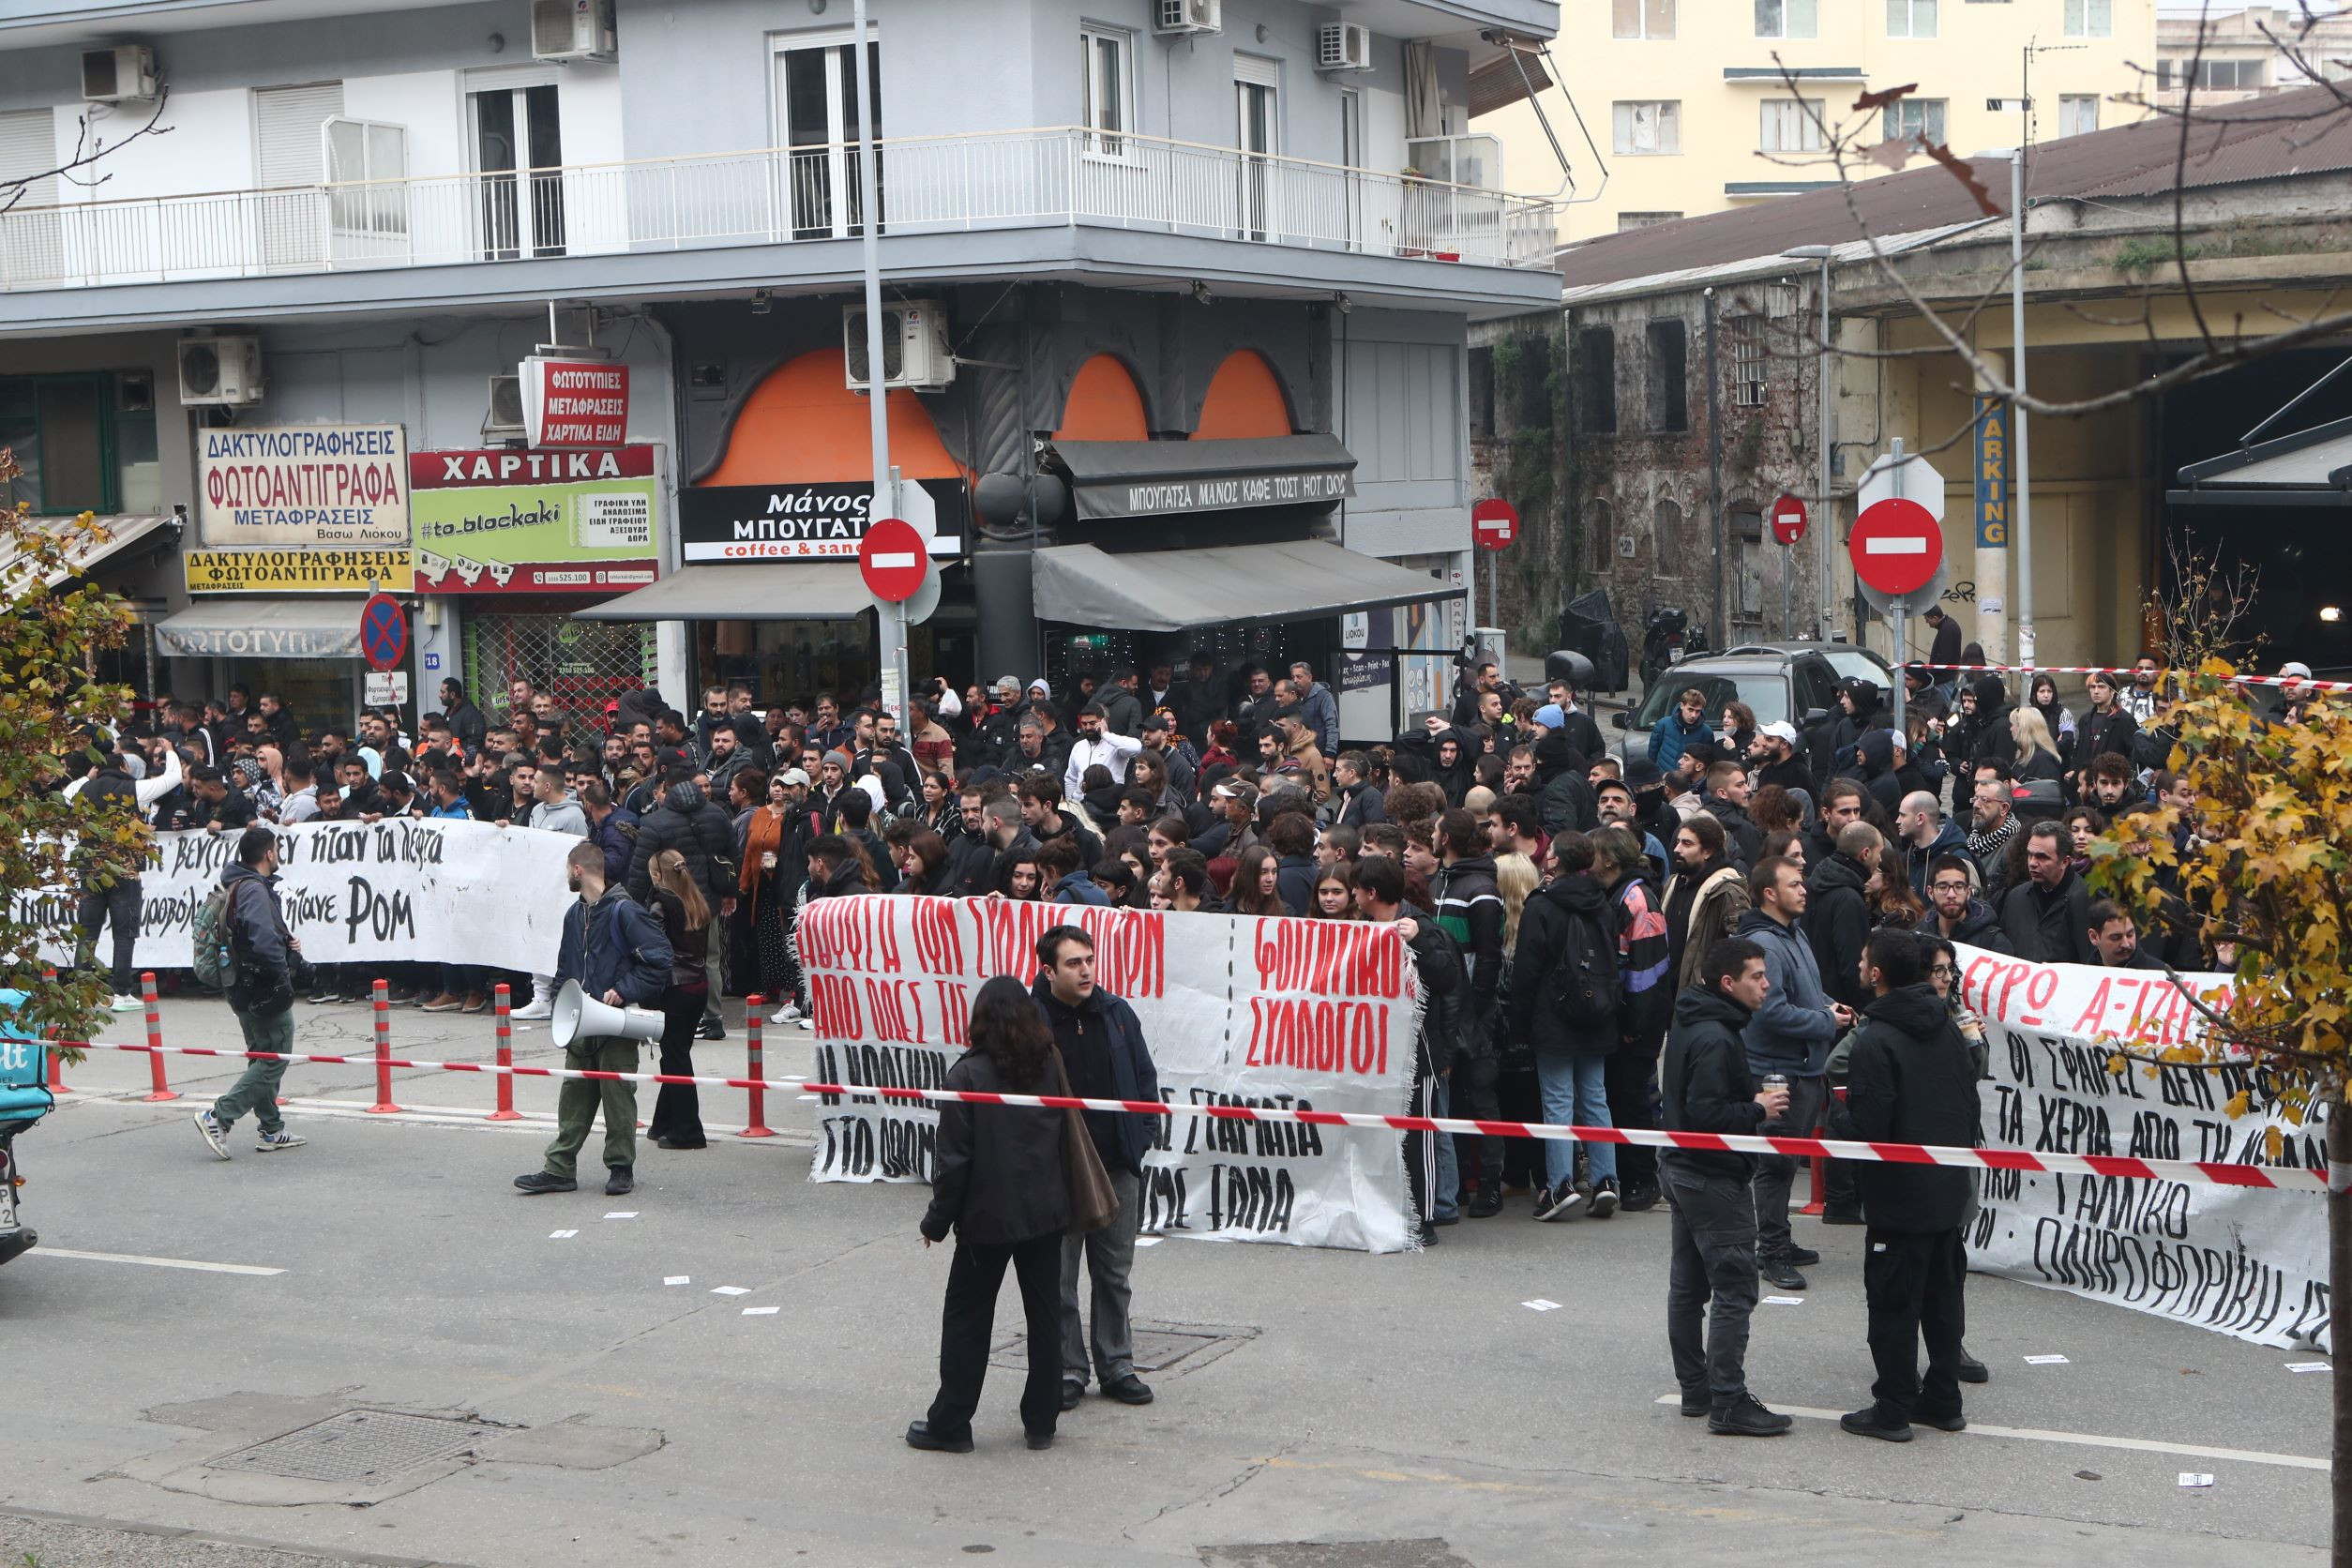 Πυροβολισμός 16χρονου: Ειρηνική διαδήλωση στο Ηράκλειο